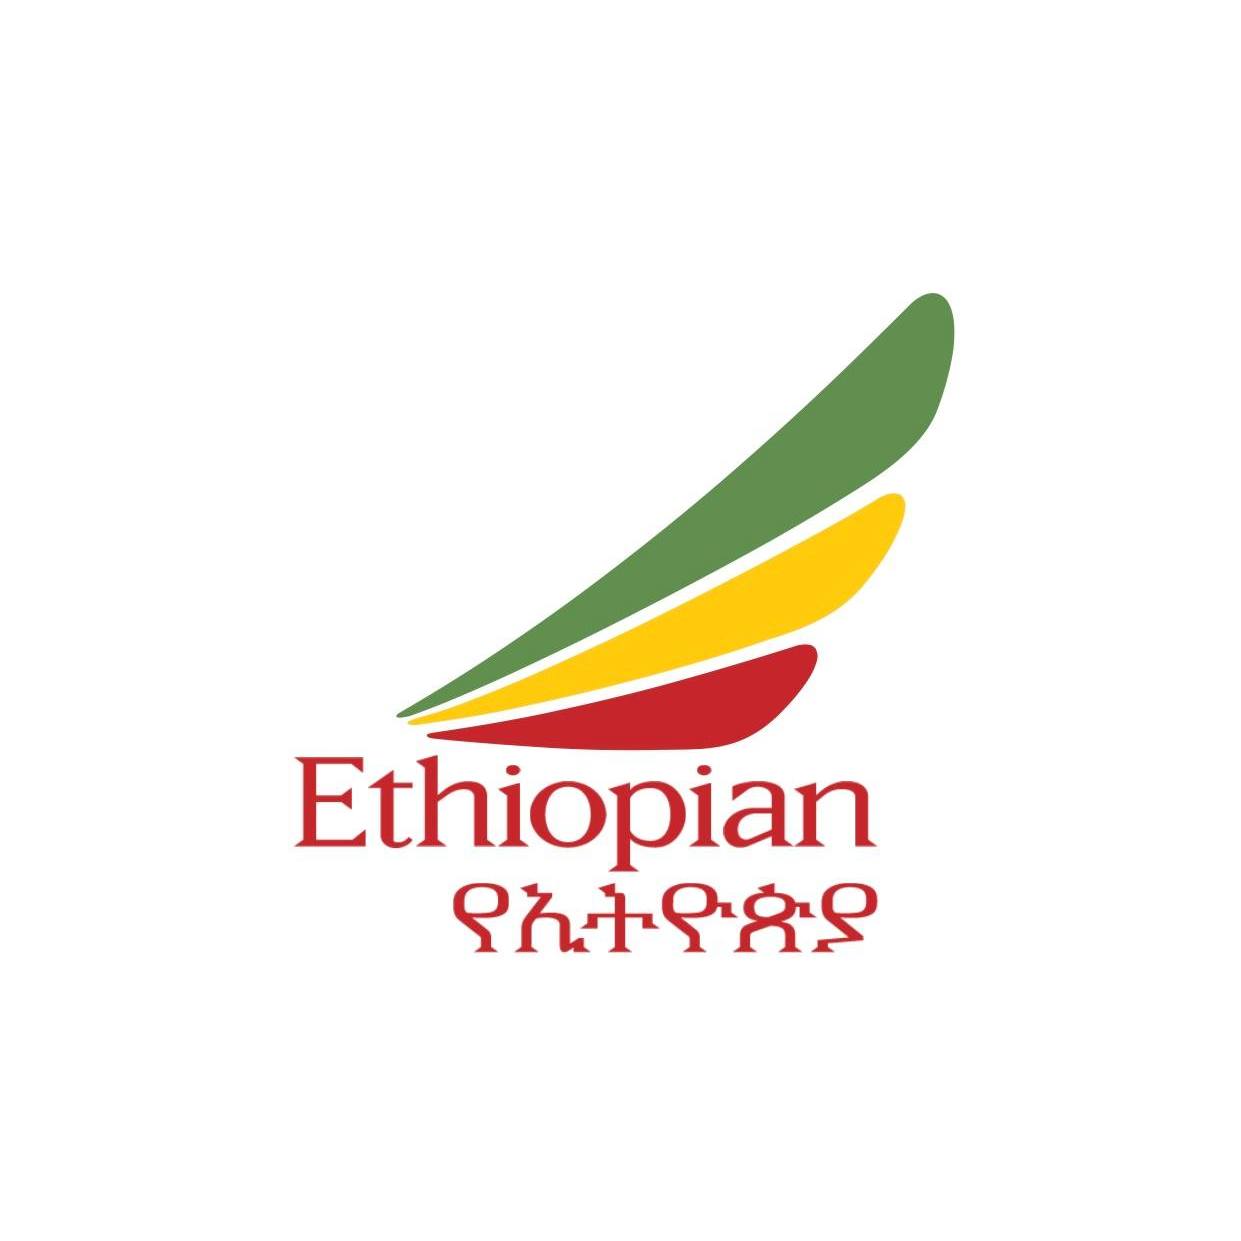 Ethiopian Airlines Announcement